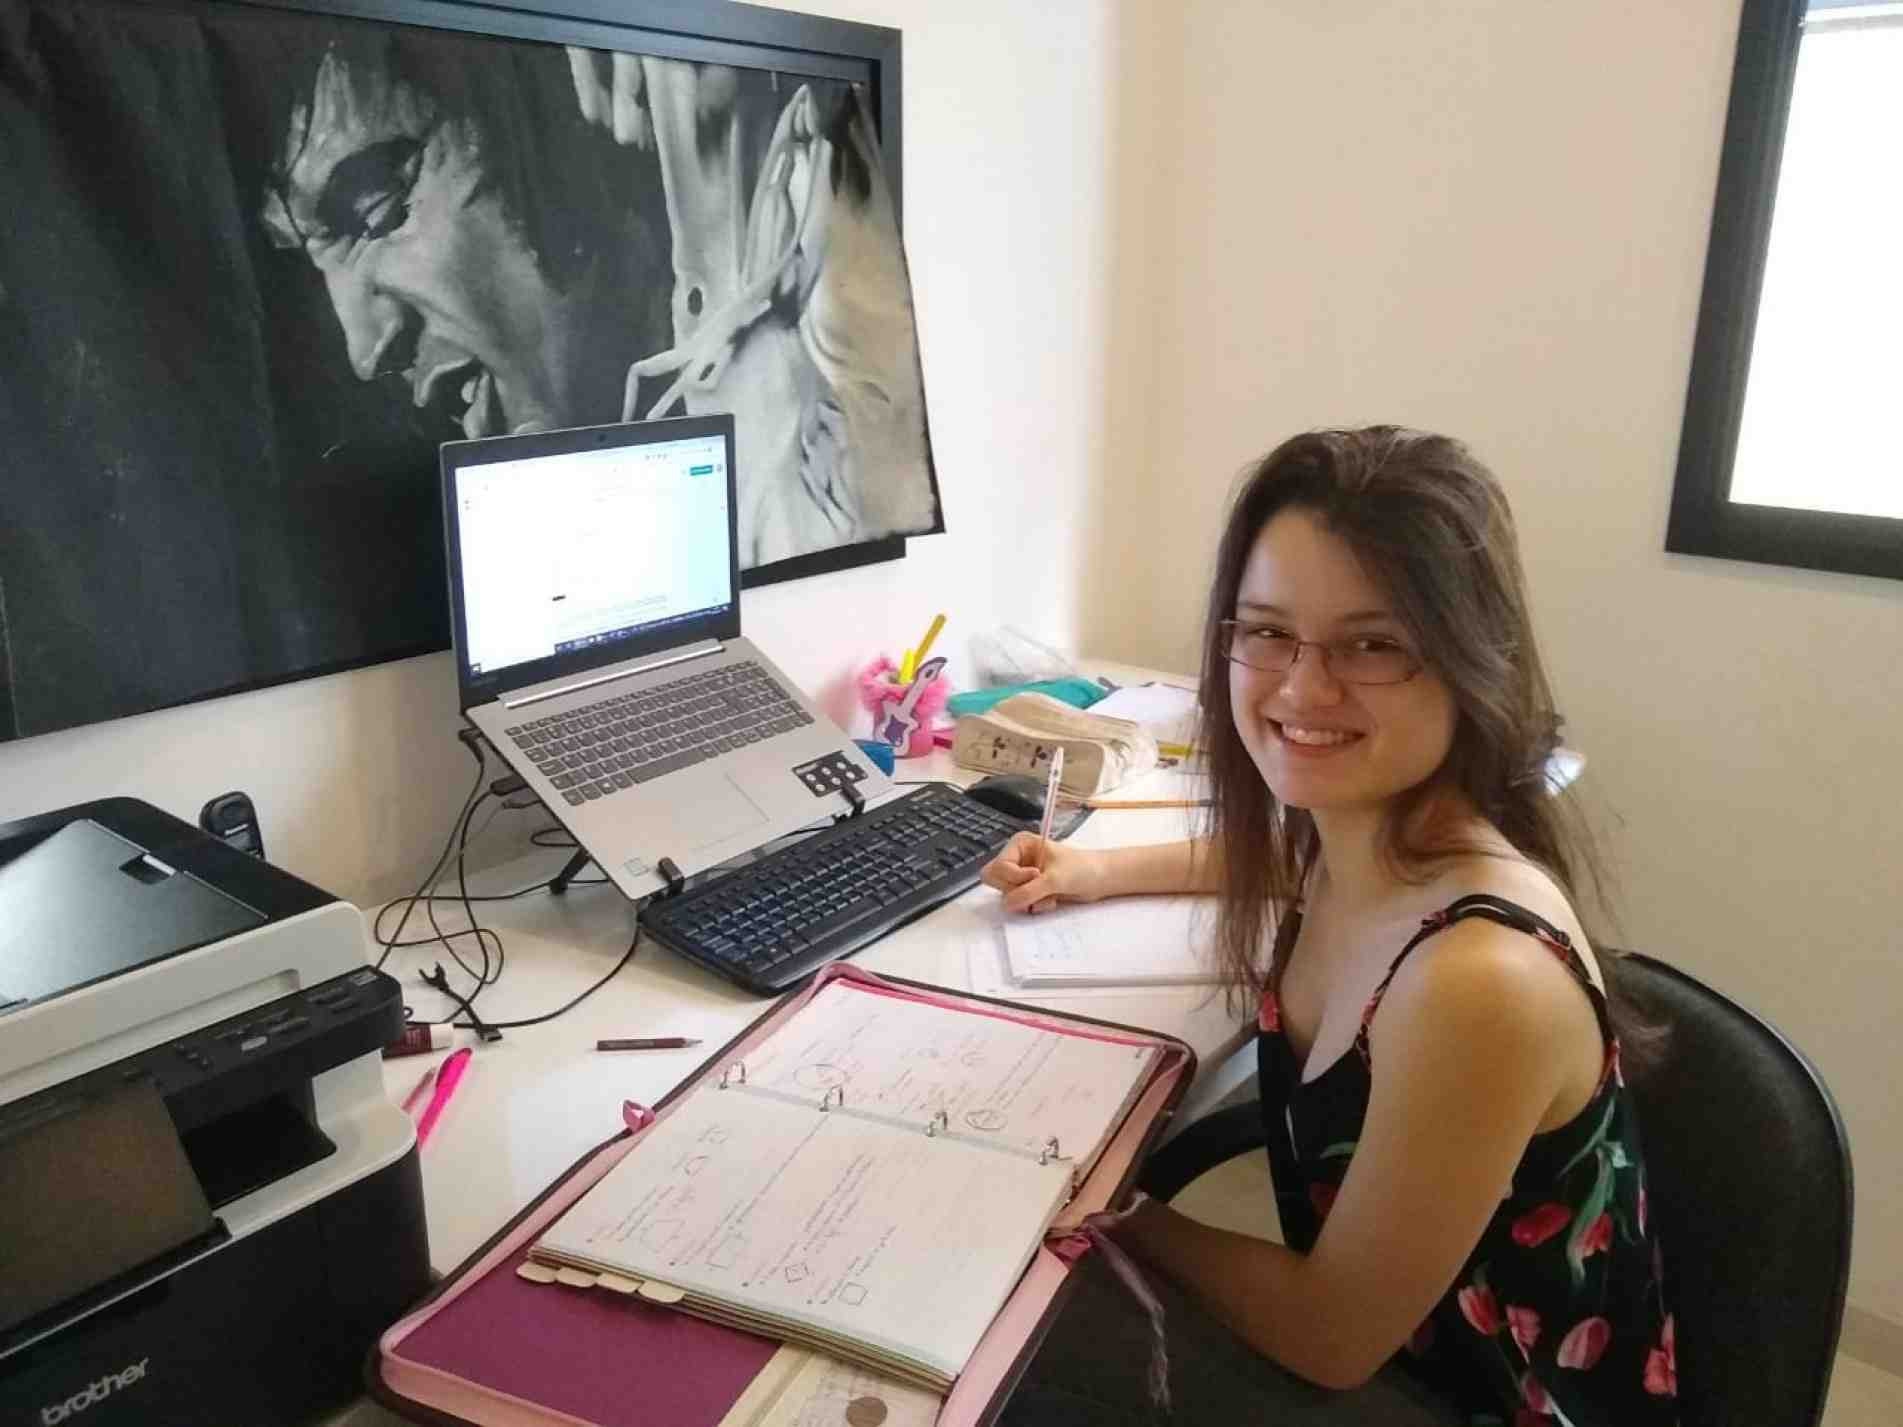 Elisa de Oliveira Flemer passou na USP e em universidades norte-americanas, mas não pode fazer matrícula